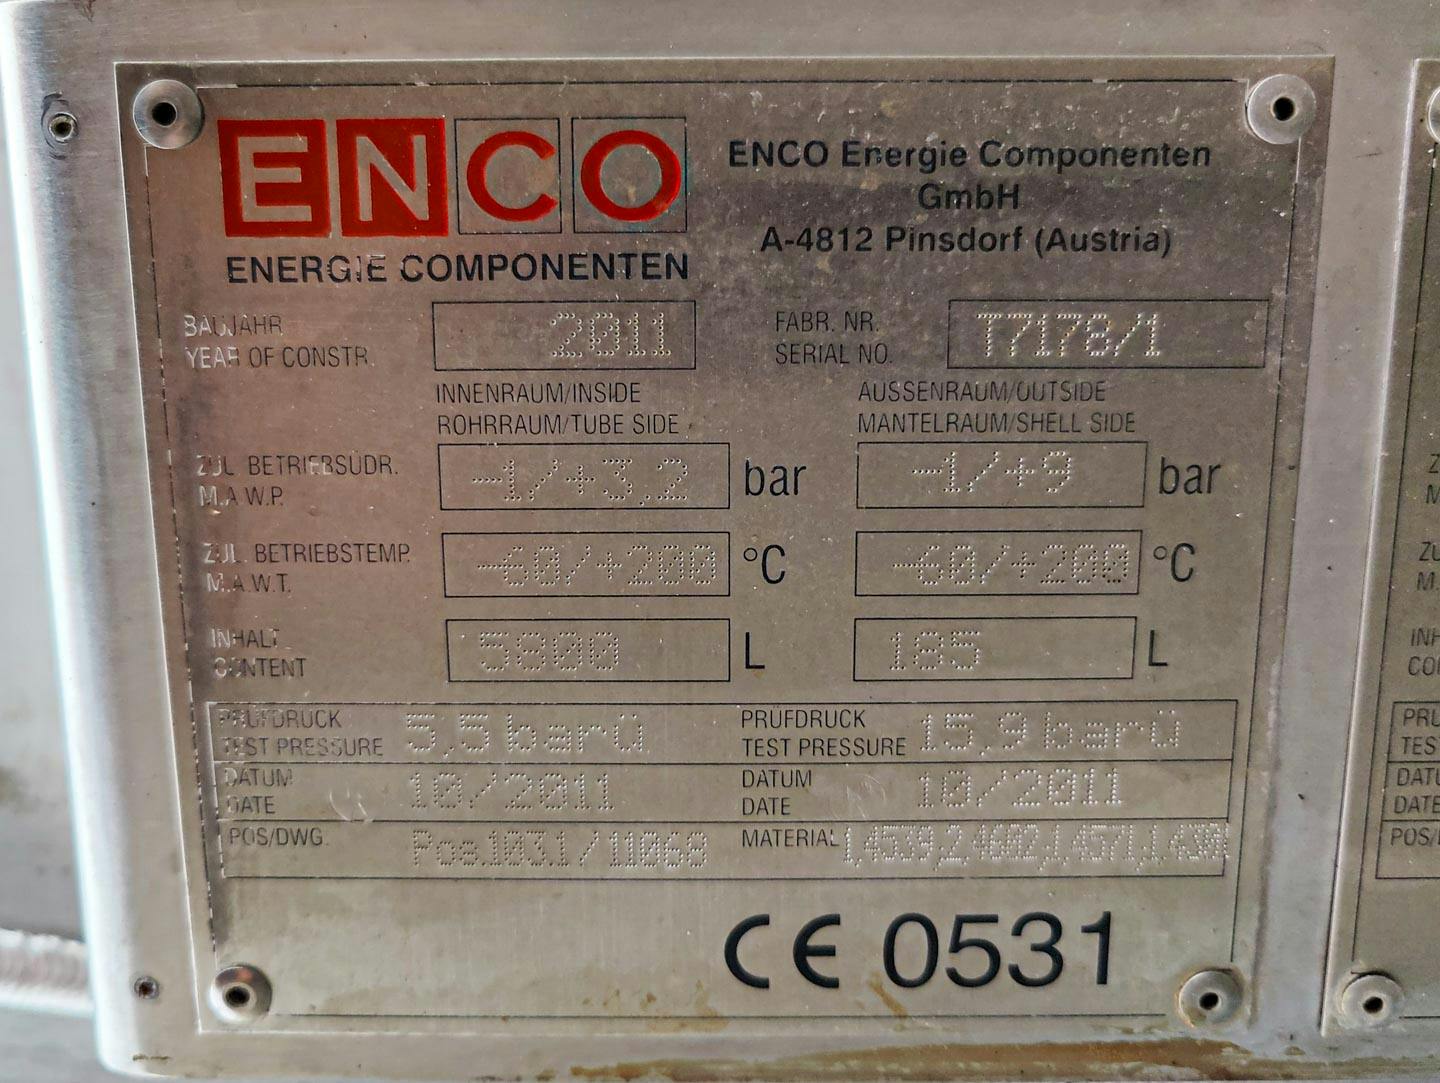 Enco 4250 Ltr - Reattore in acciaio inox - image 11